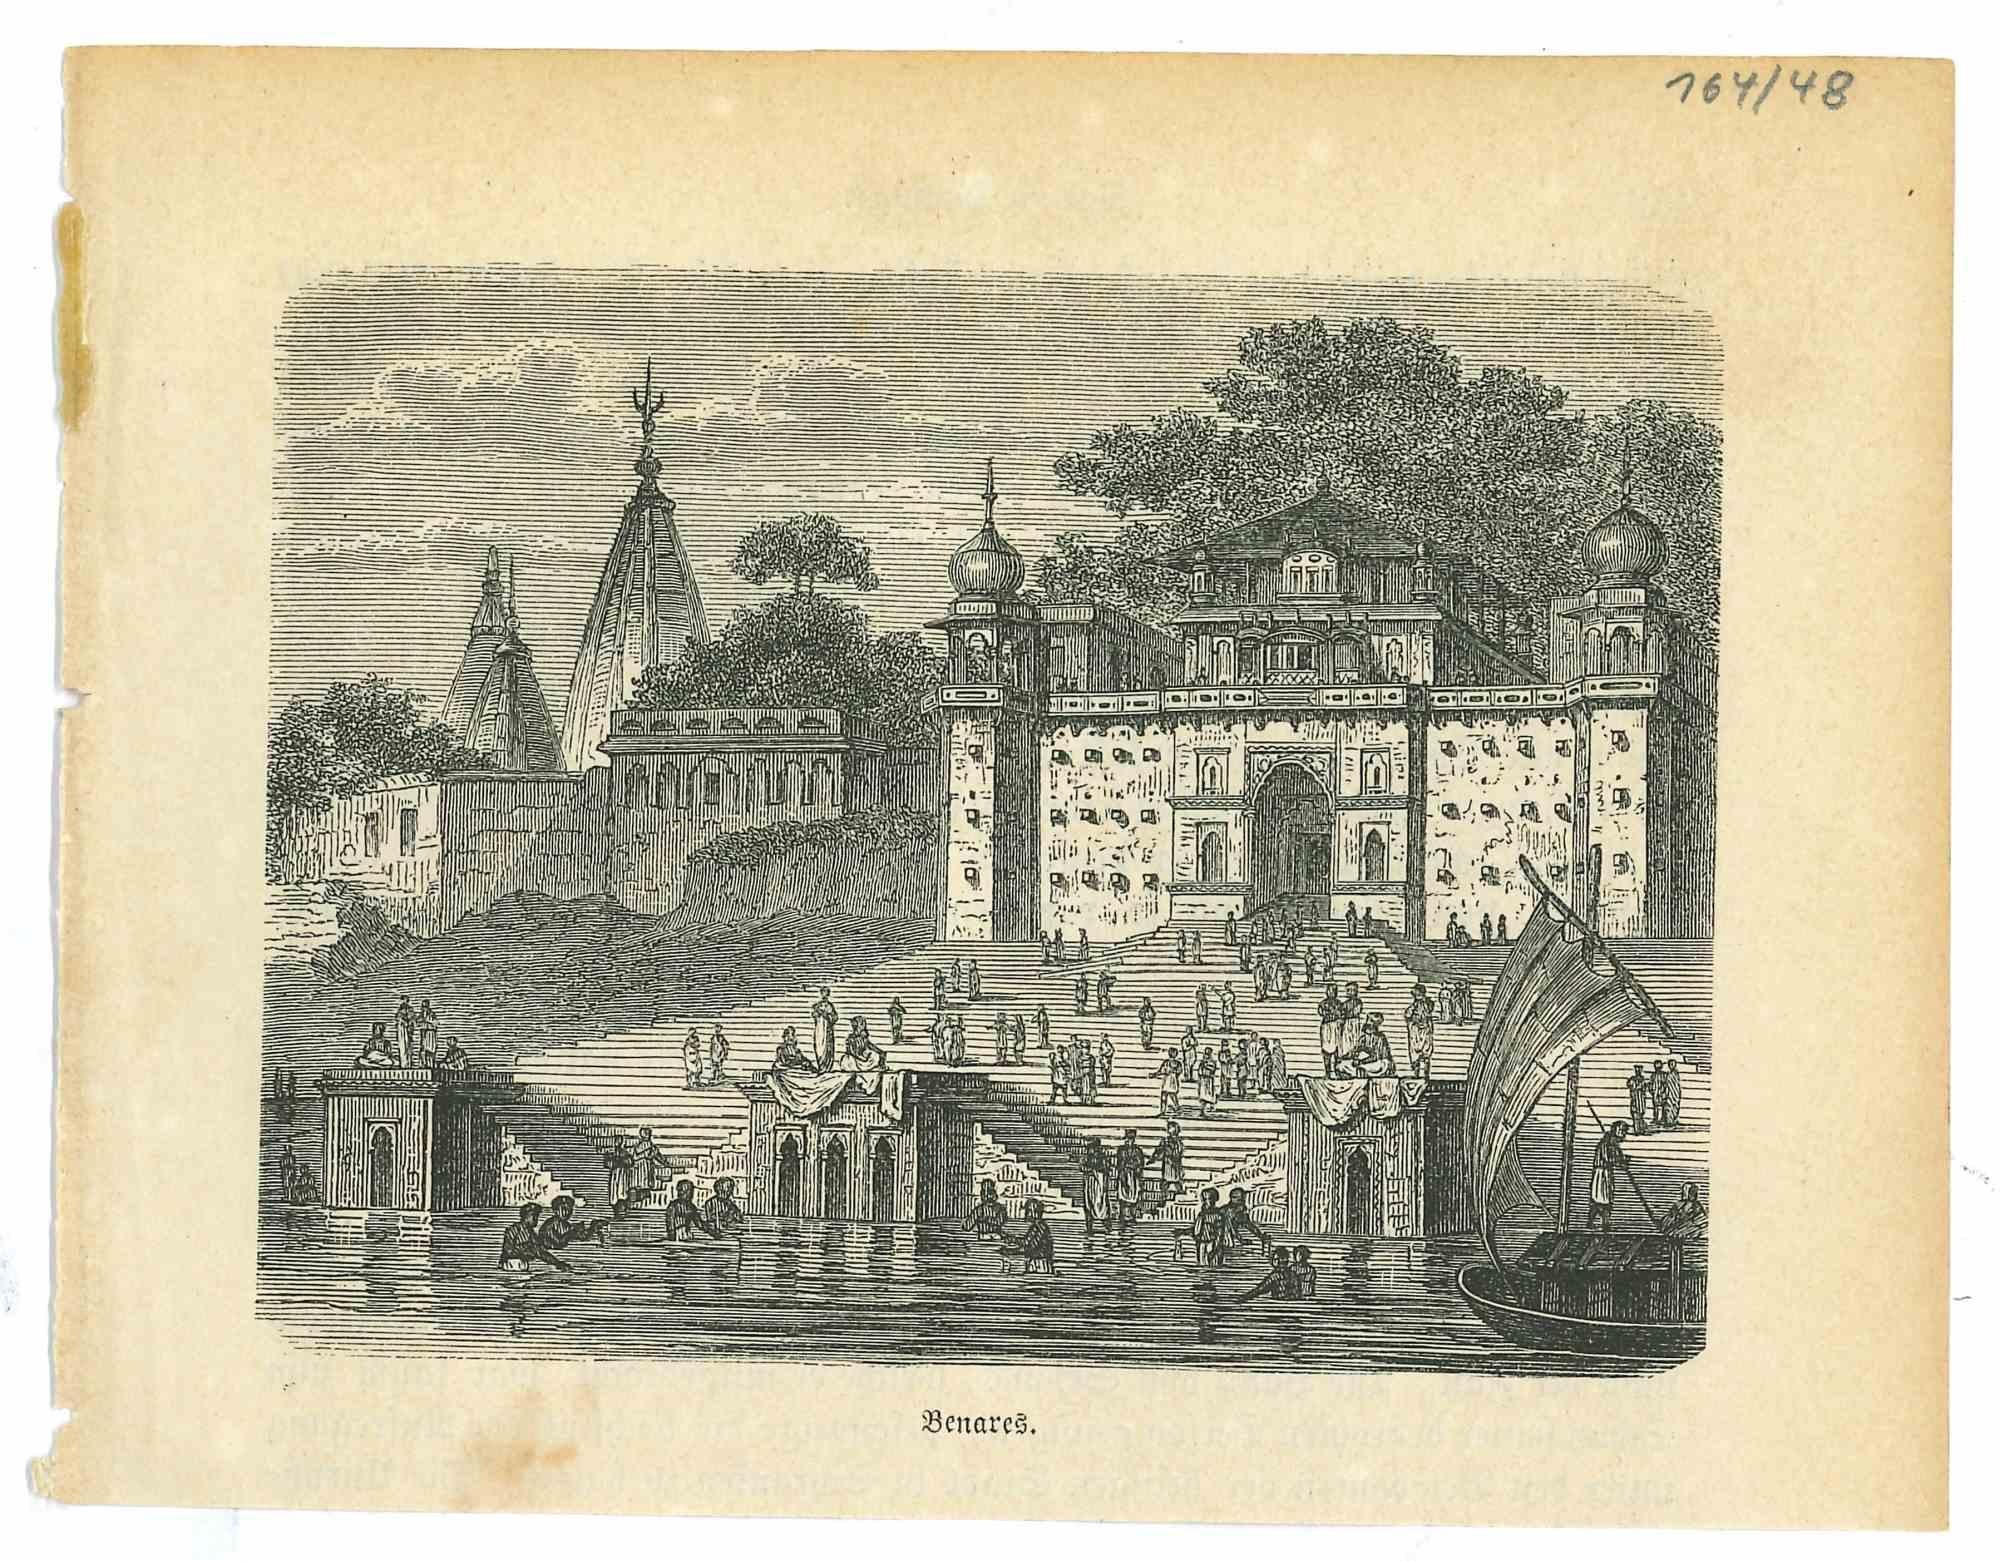 Unknown Landscape Print - Ancient View of Benares - Original Lithograph - 1850s